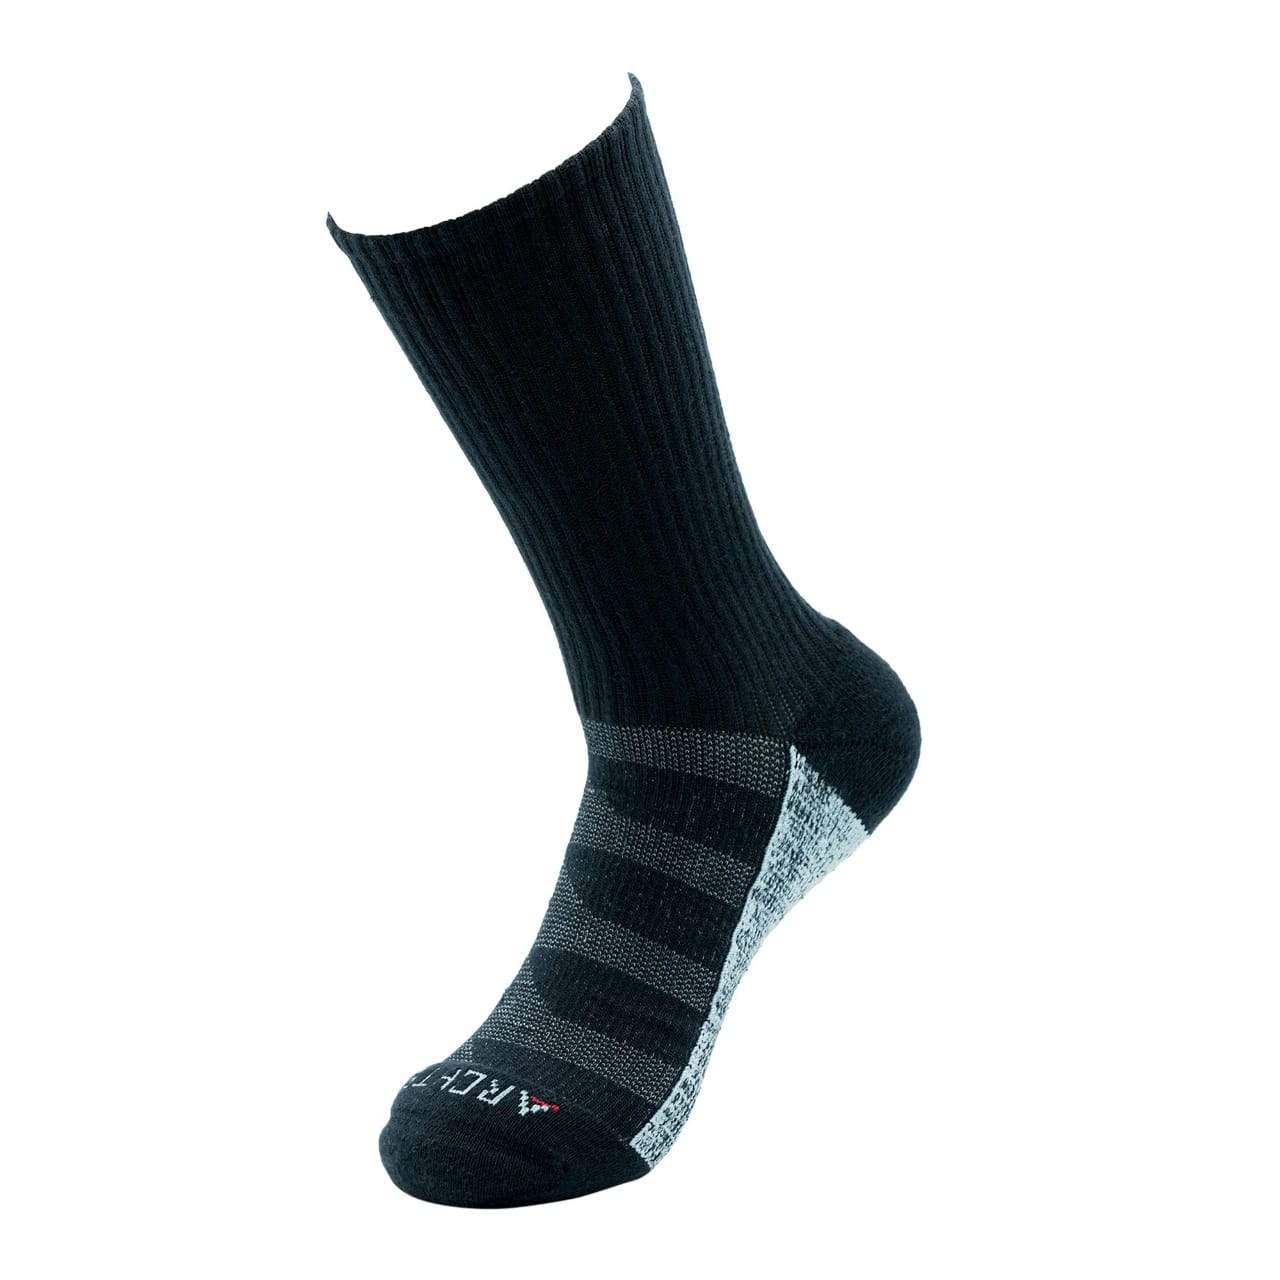 ArchTek® Socks (6 Pack Combo) upsell ArchTek 